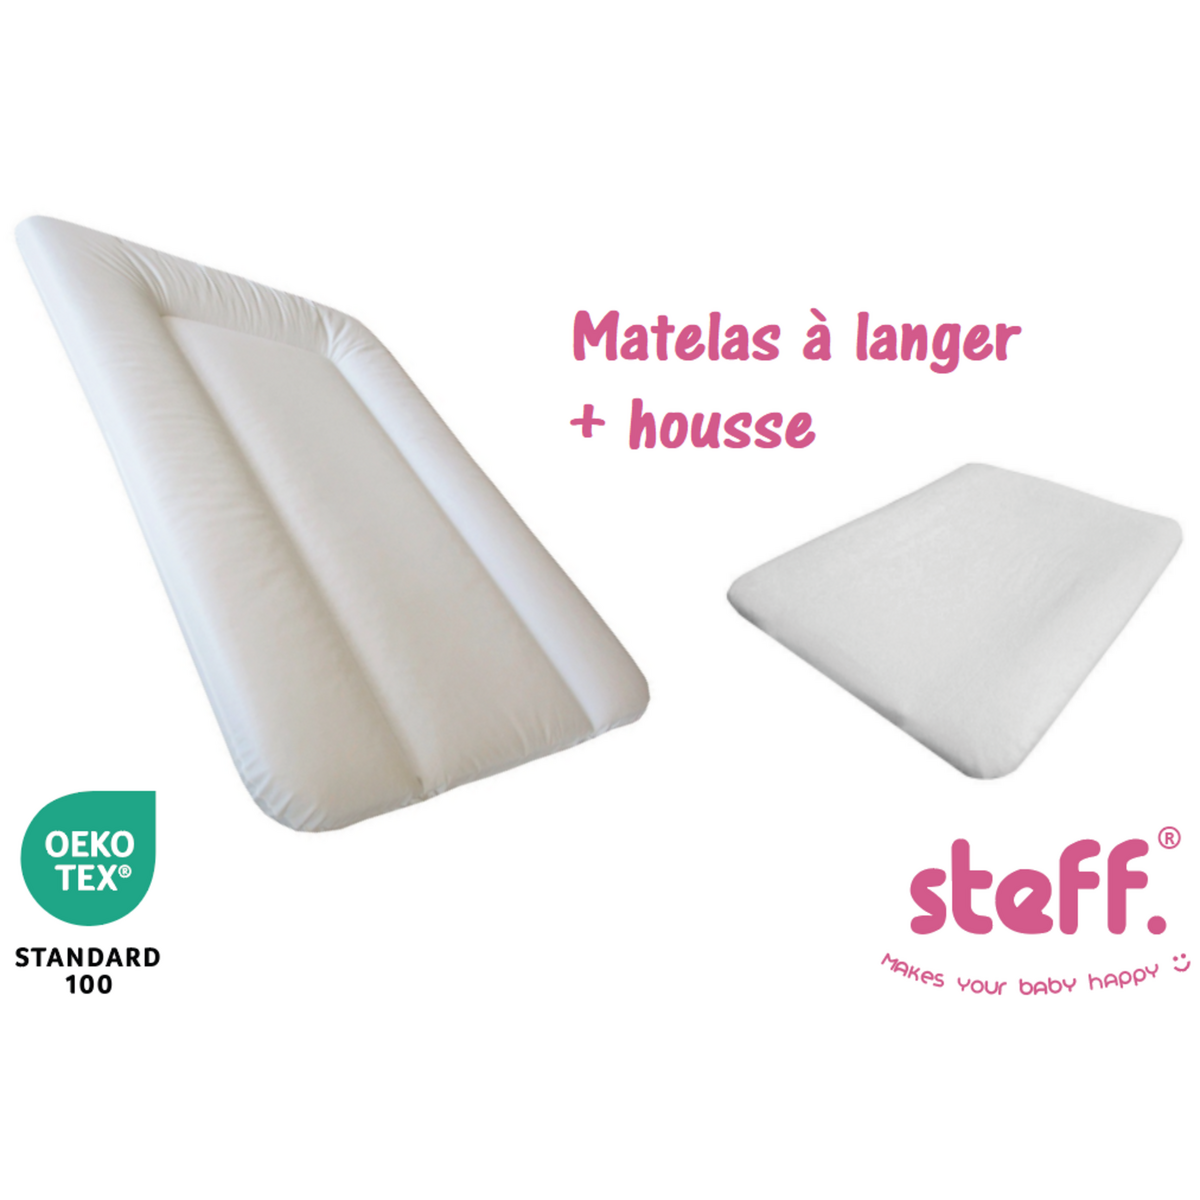 Steff - Matelas à langer blanc 50x70 cm + housse de matelas à langer blanc  50x70 cm - l'OEKO TEX label standard 100 pas cher 